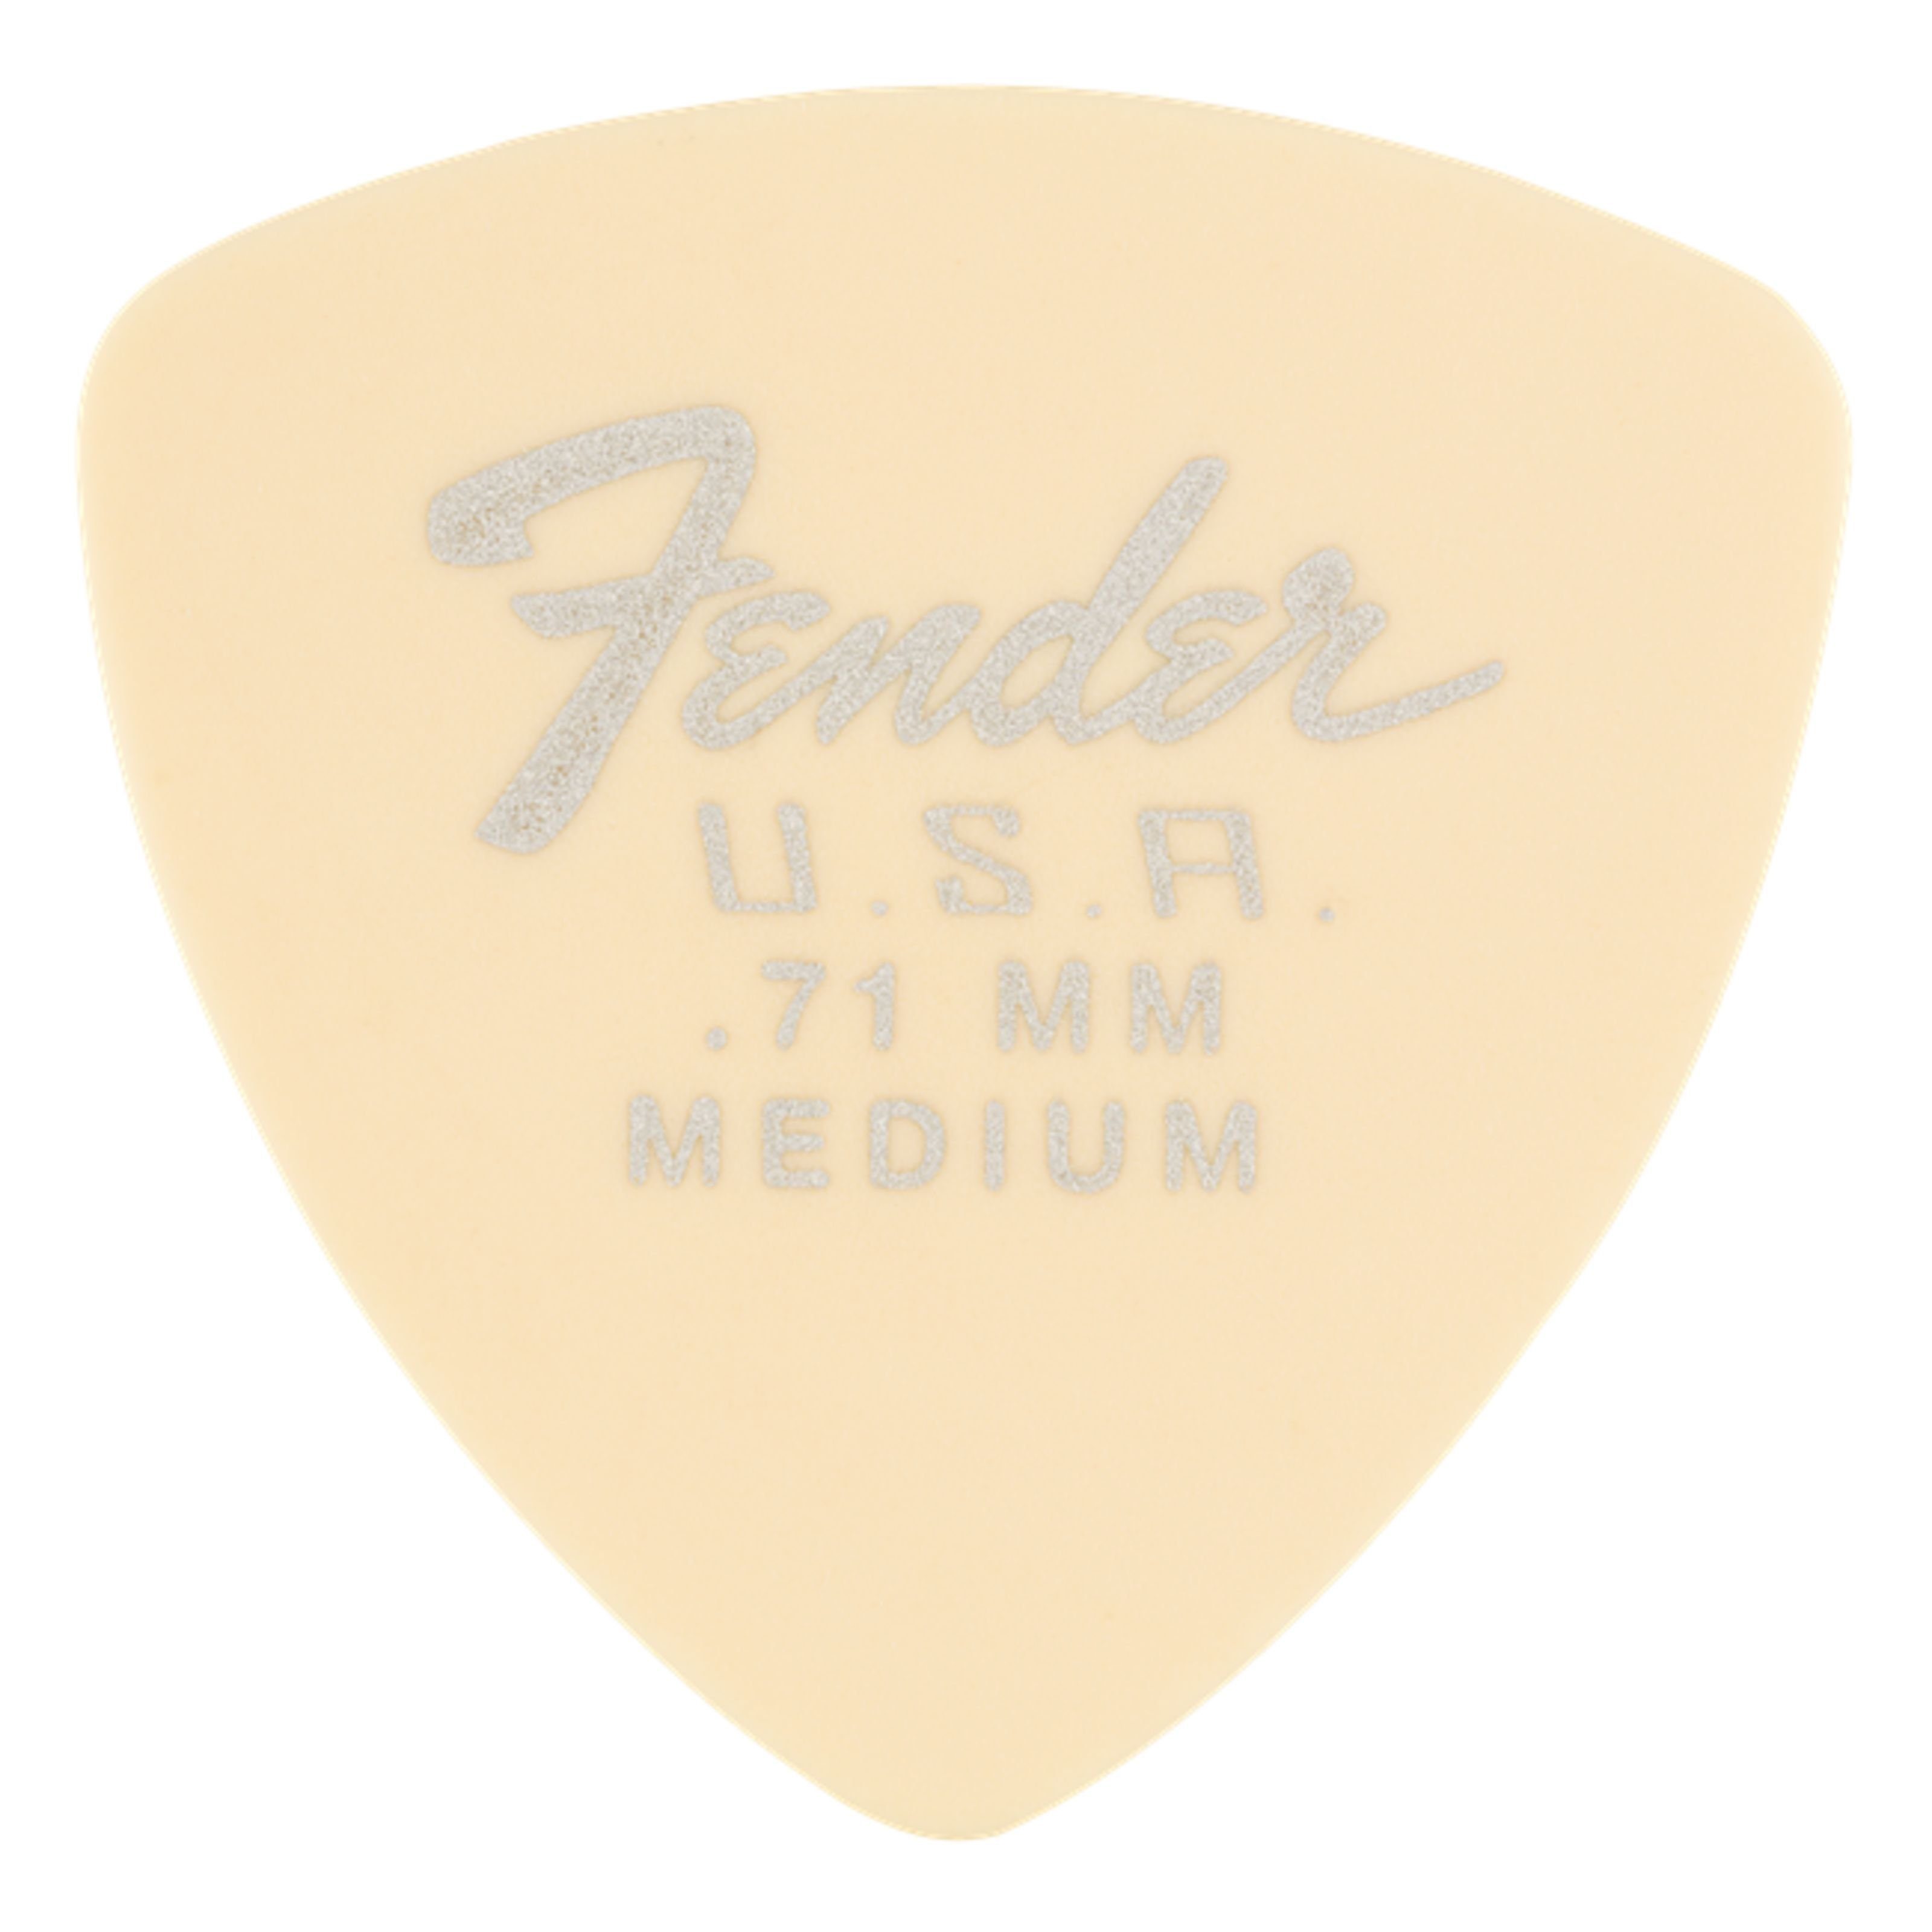 Fender Spielzeug-Musikinstrument, 346 Dura-Tone Picks 0,71 mm - Plektren Set